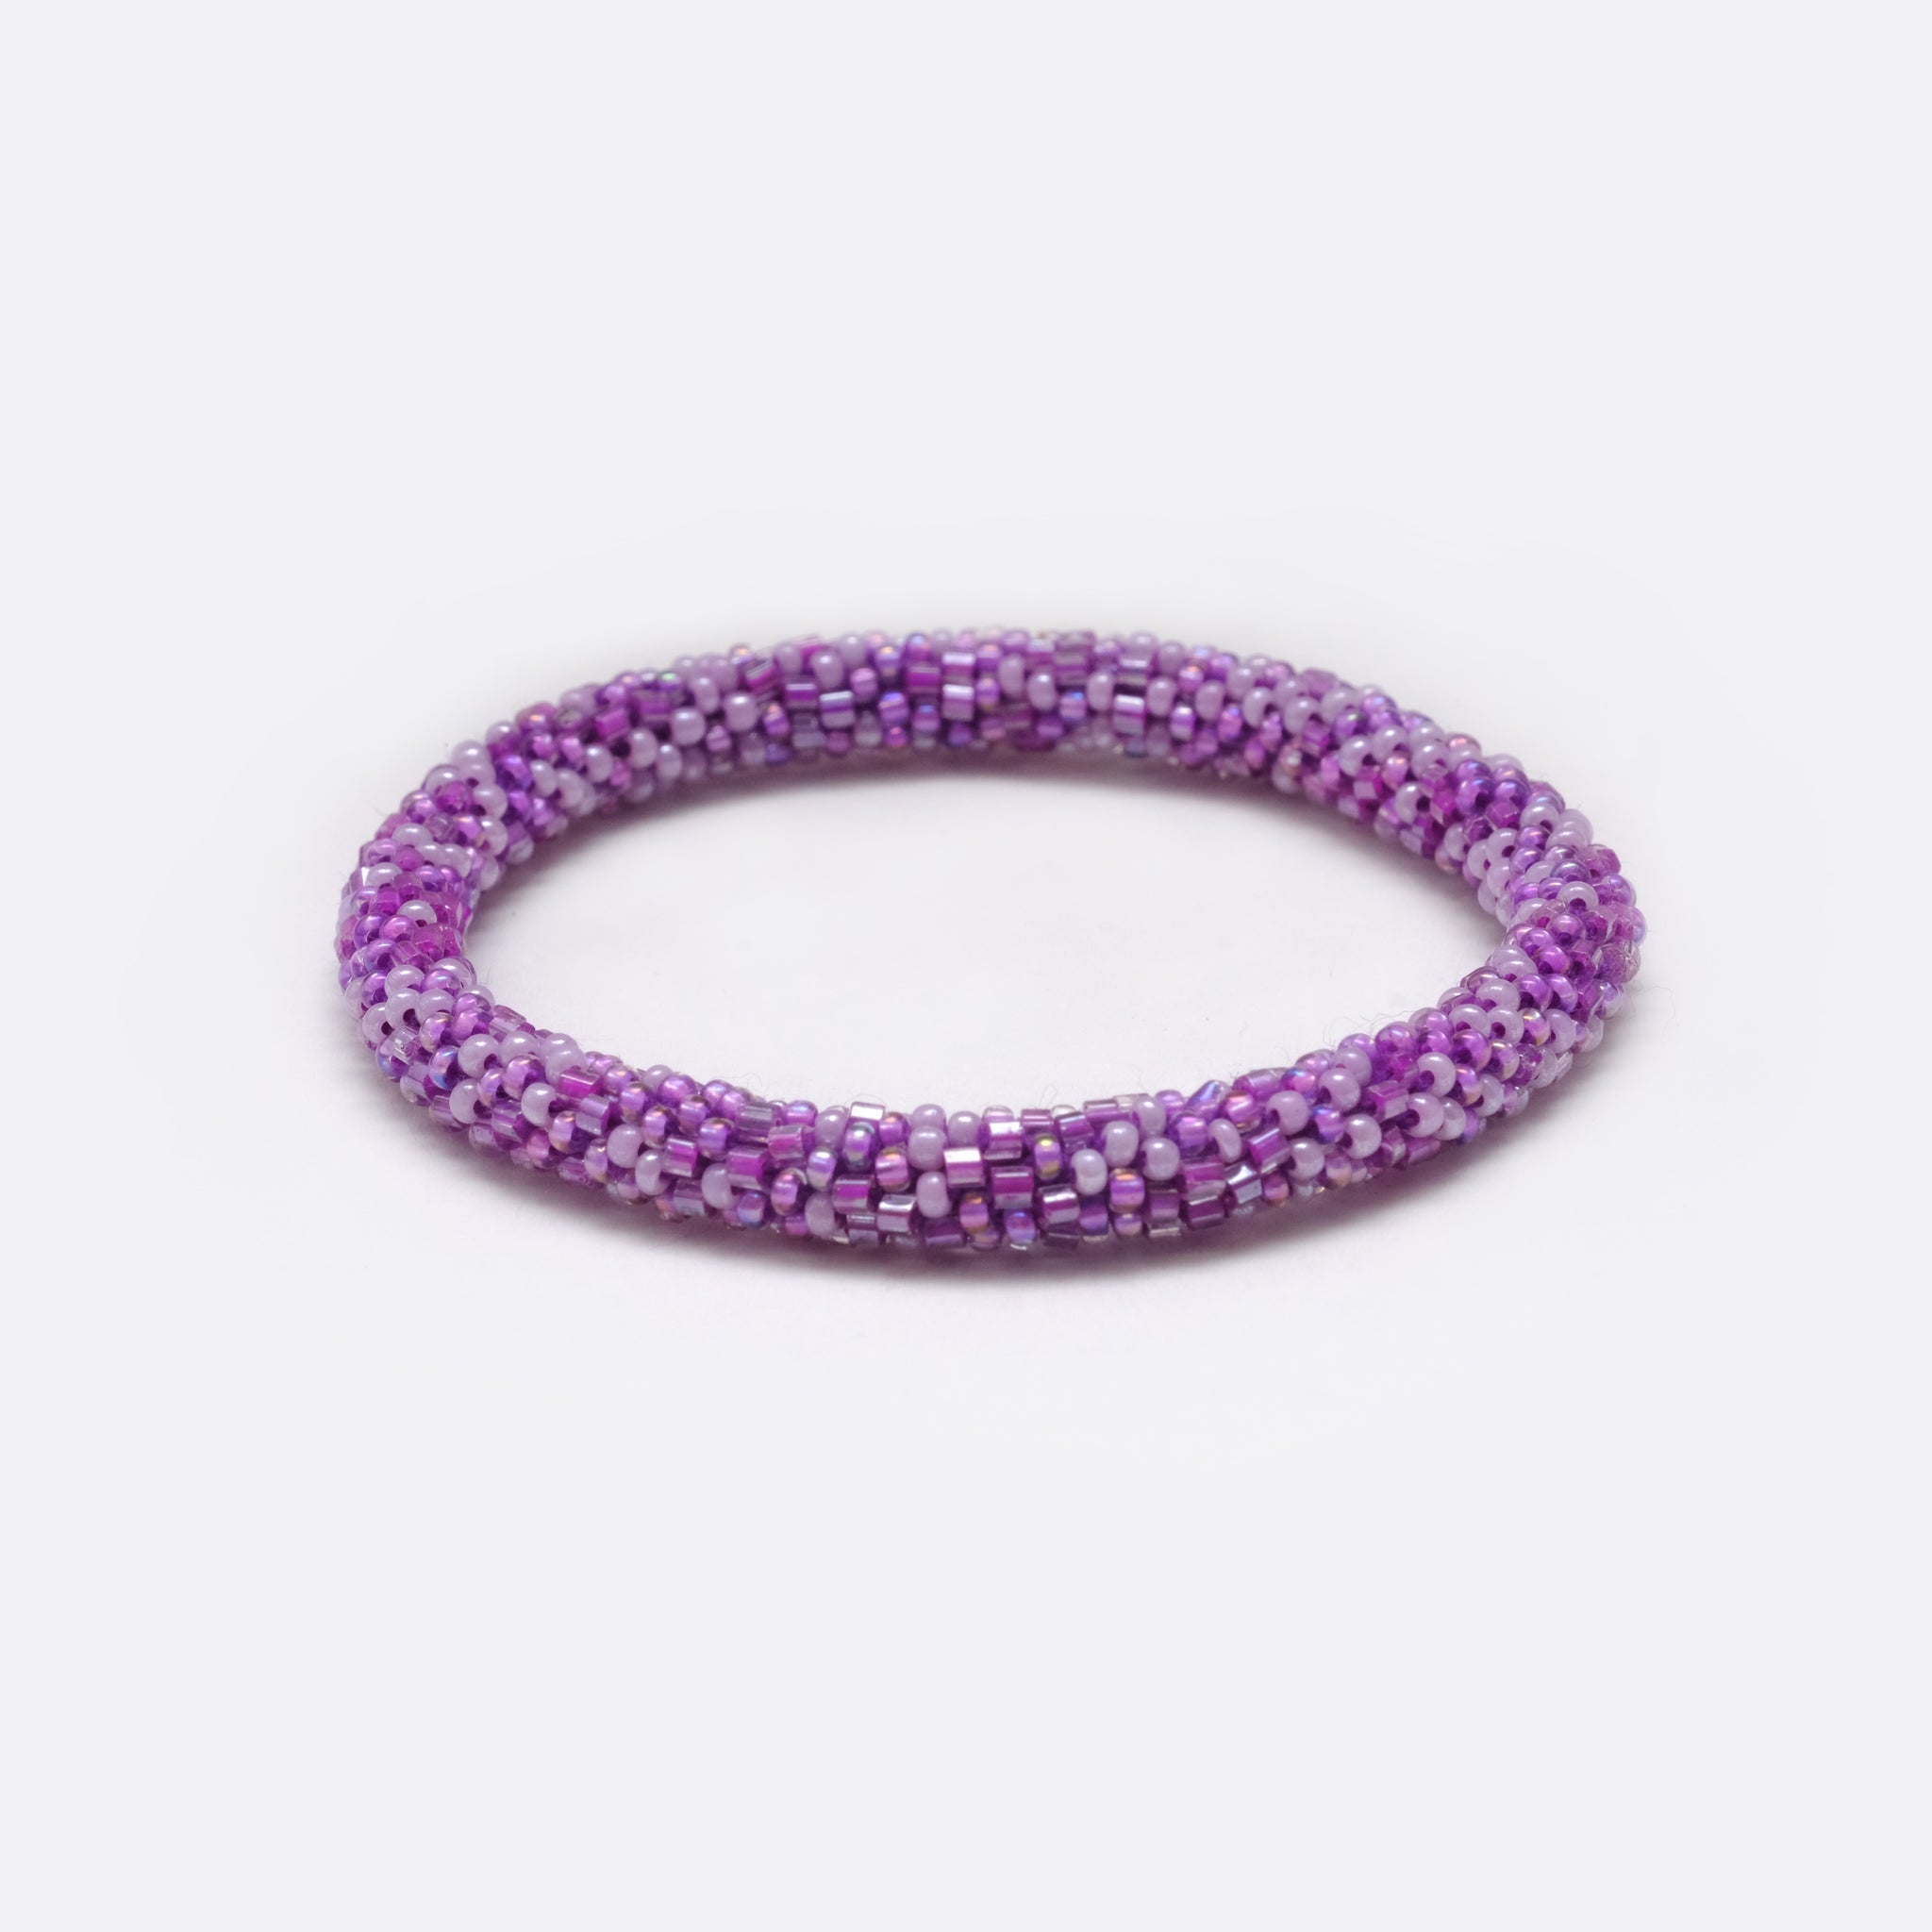 Beaded Bracelet - Shiny Purple Points